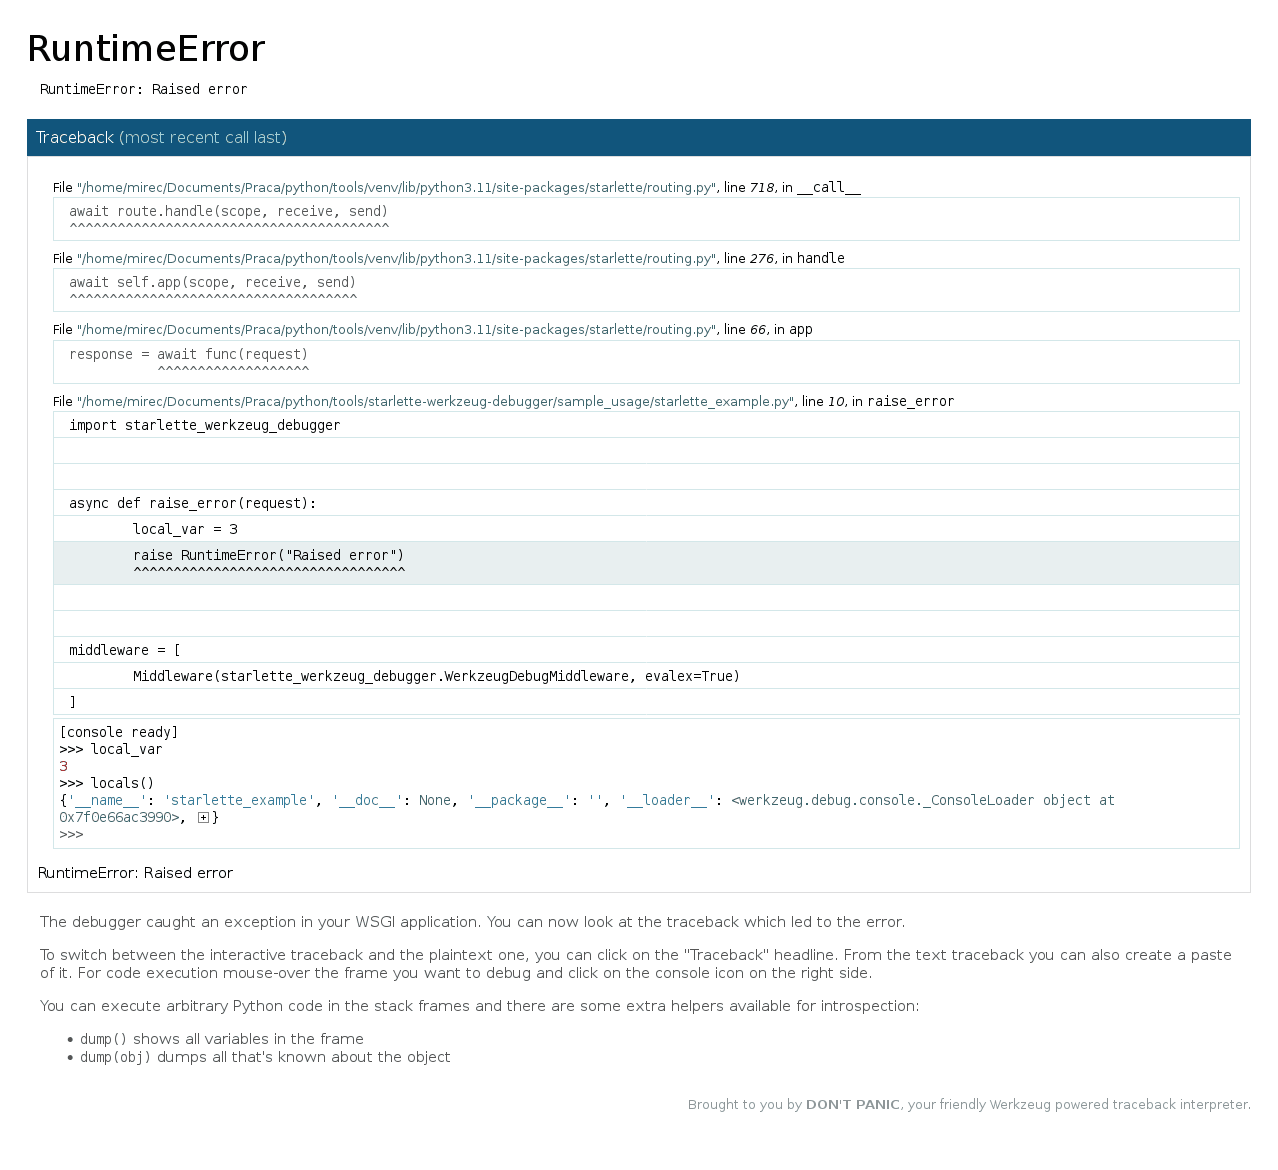 https://raw.github.com/wiki/mireq/starlette-werkzeug-debugger/debugger.png?v=2023-06-20